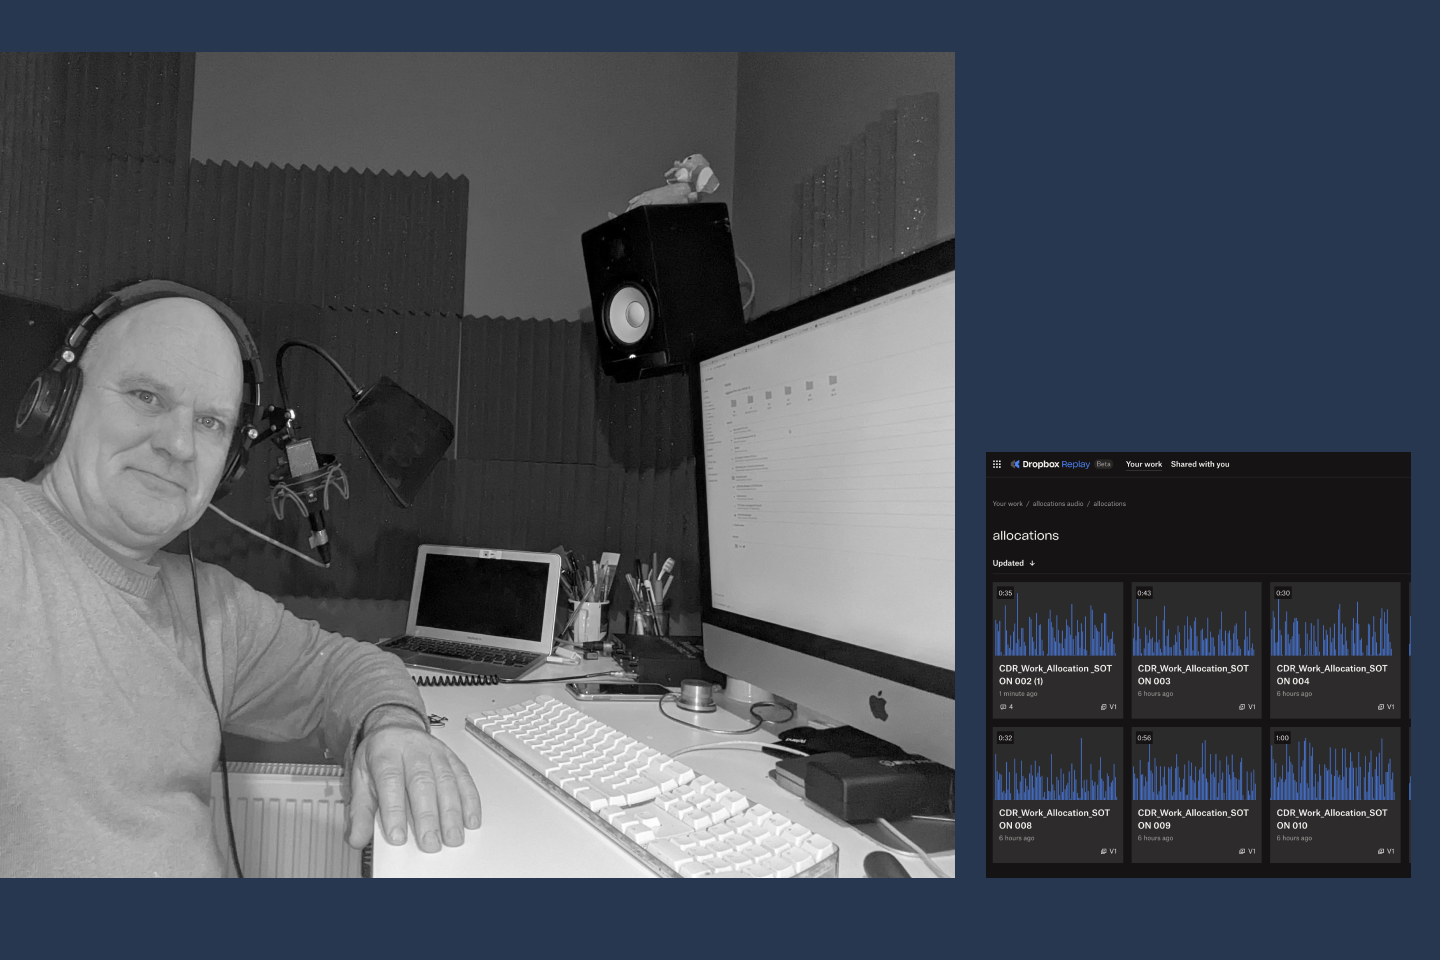 レコーディング スタジオのパソコンの前に座り、オーディオ ファイルを再生している男性